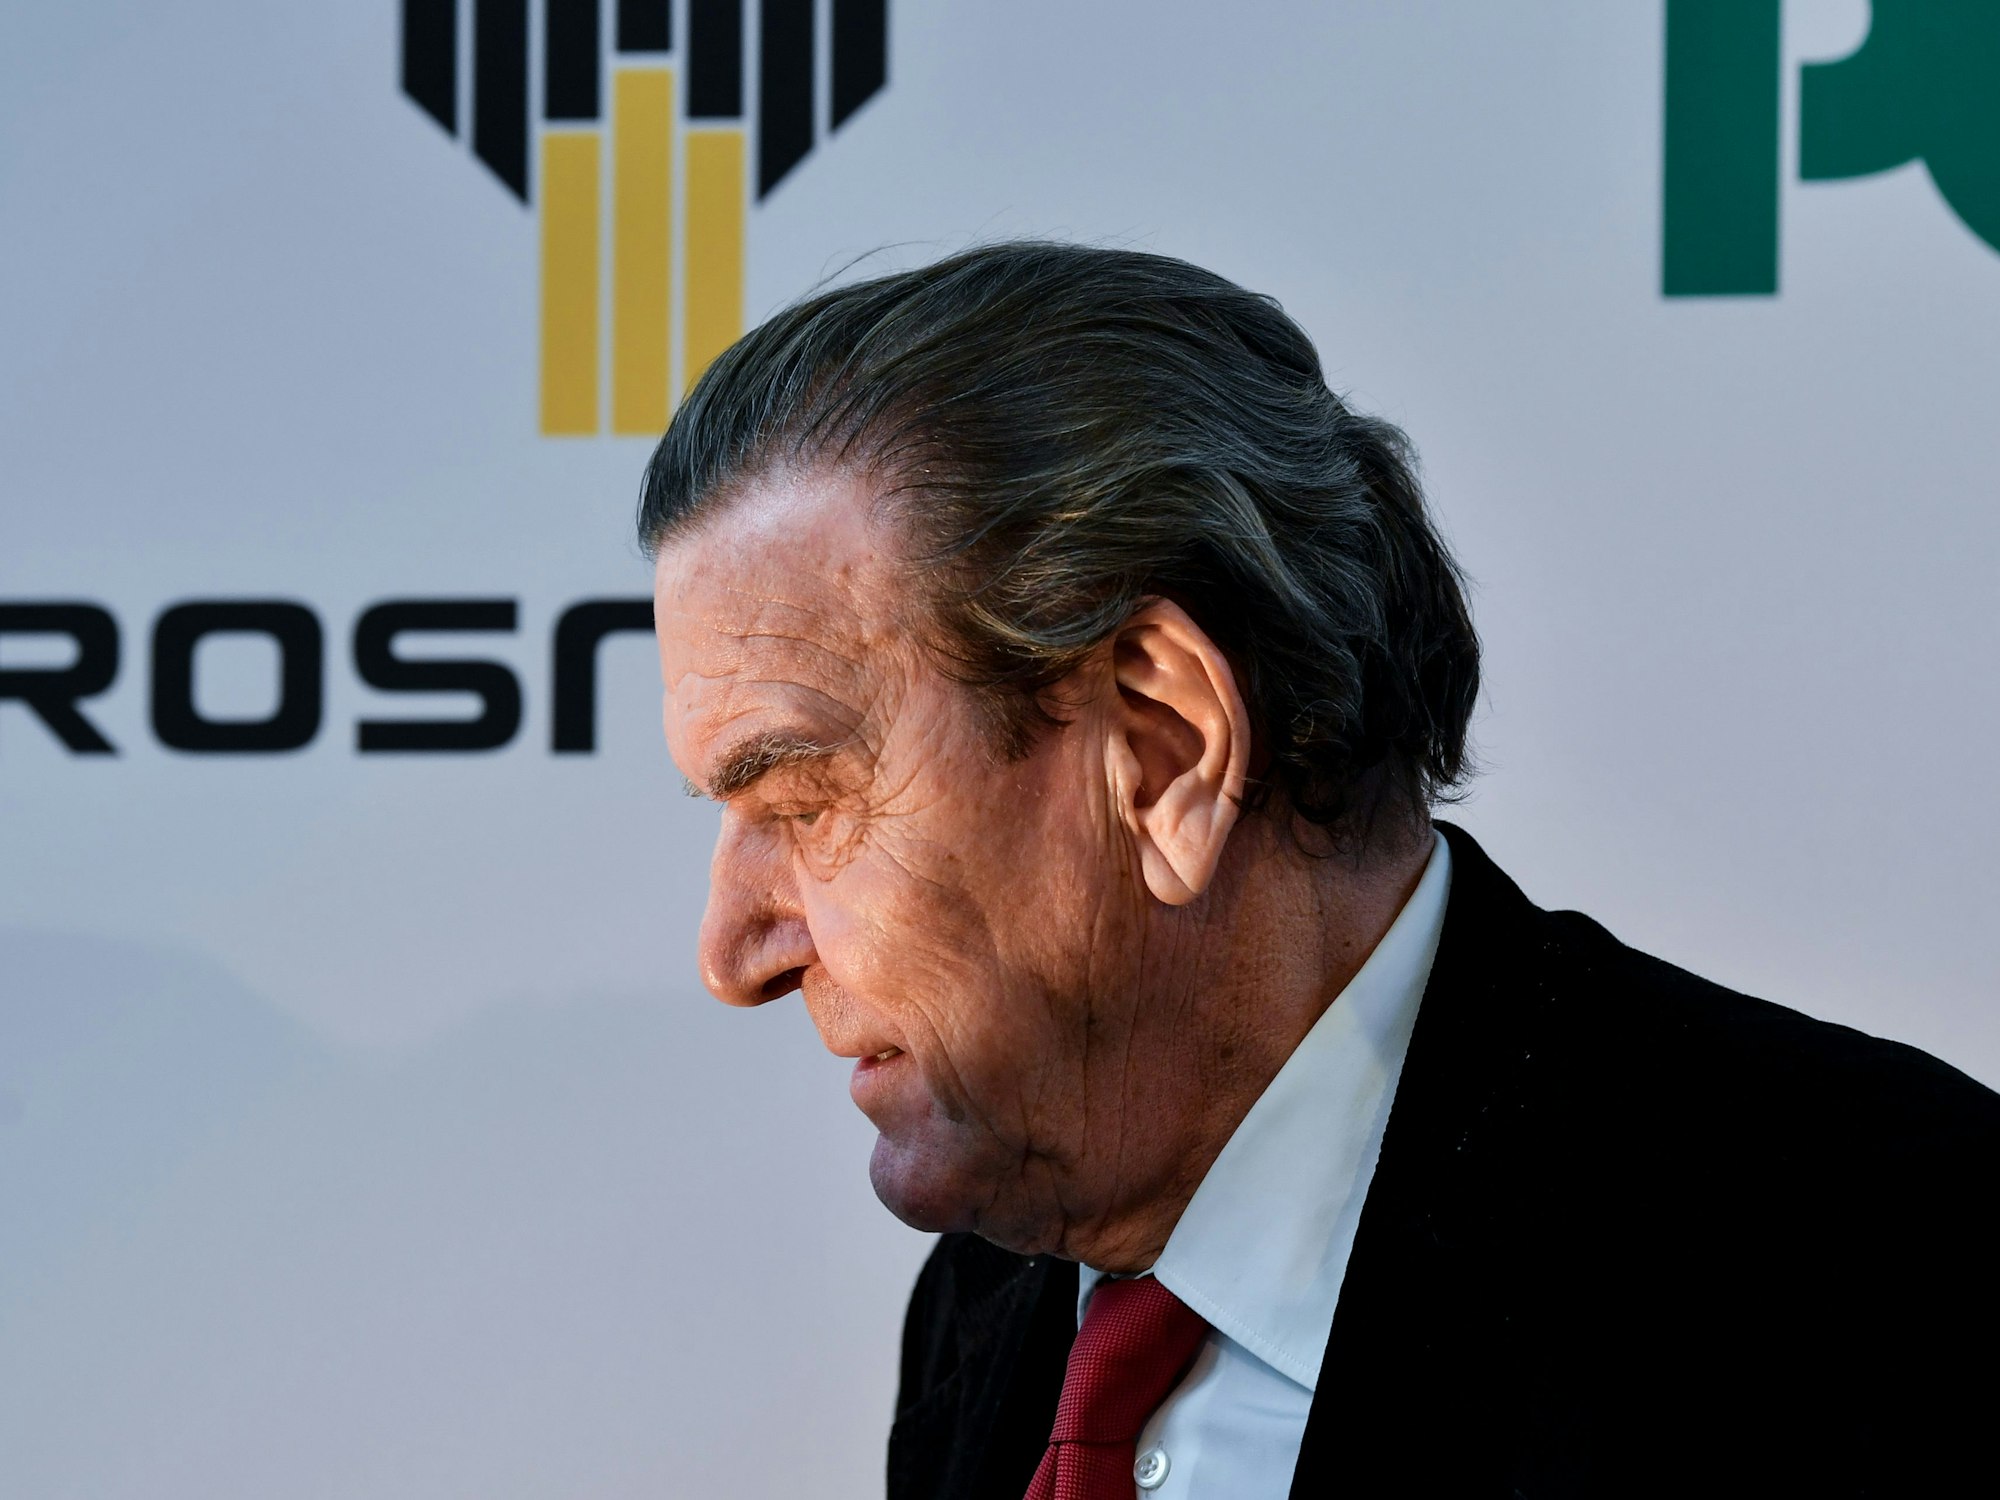 Der frühere Bundeskanzler Gerhard Schröder will den Aufsichtsrat beim russischen Ölkonzern Rosneft verlassen.